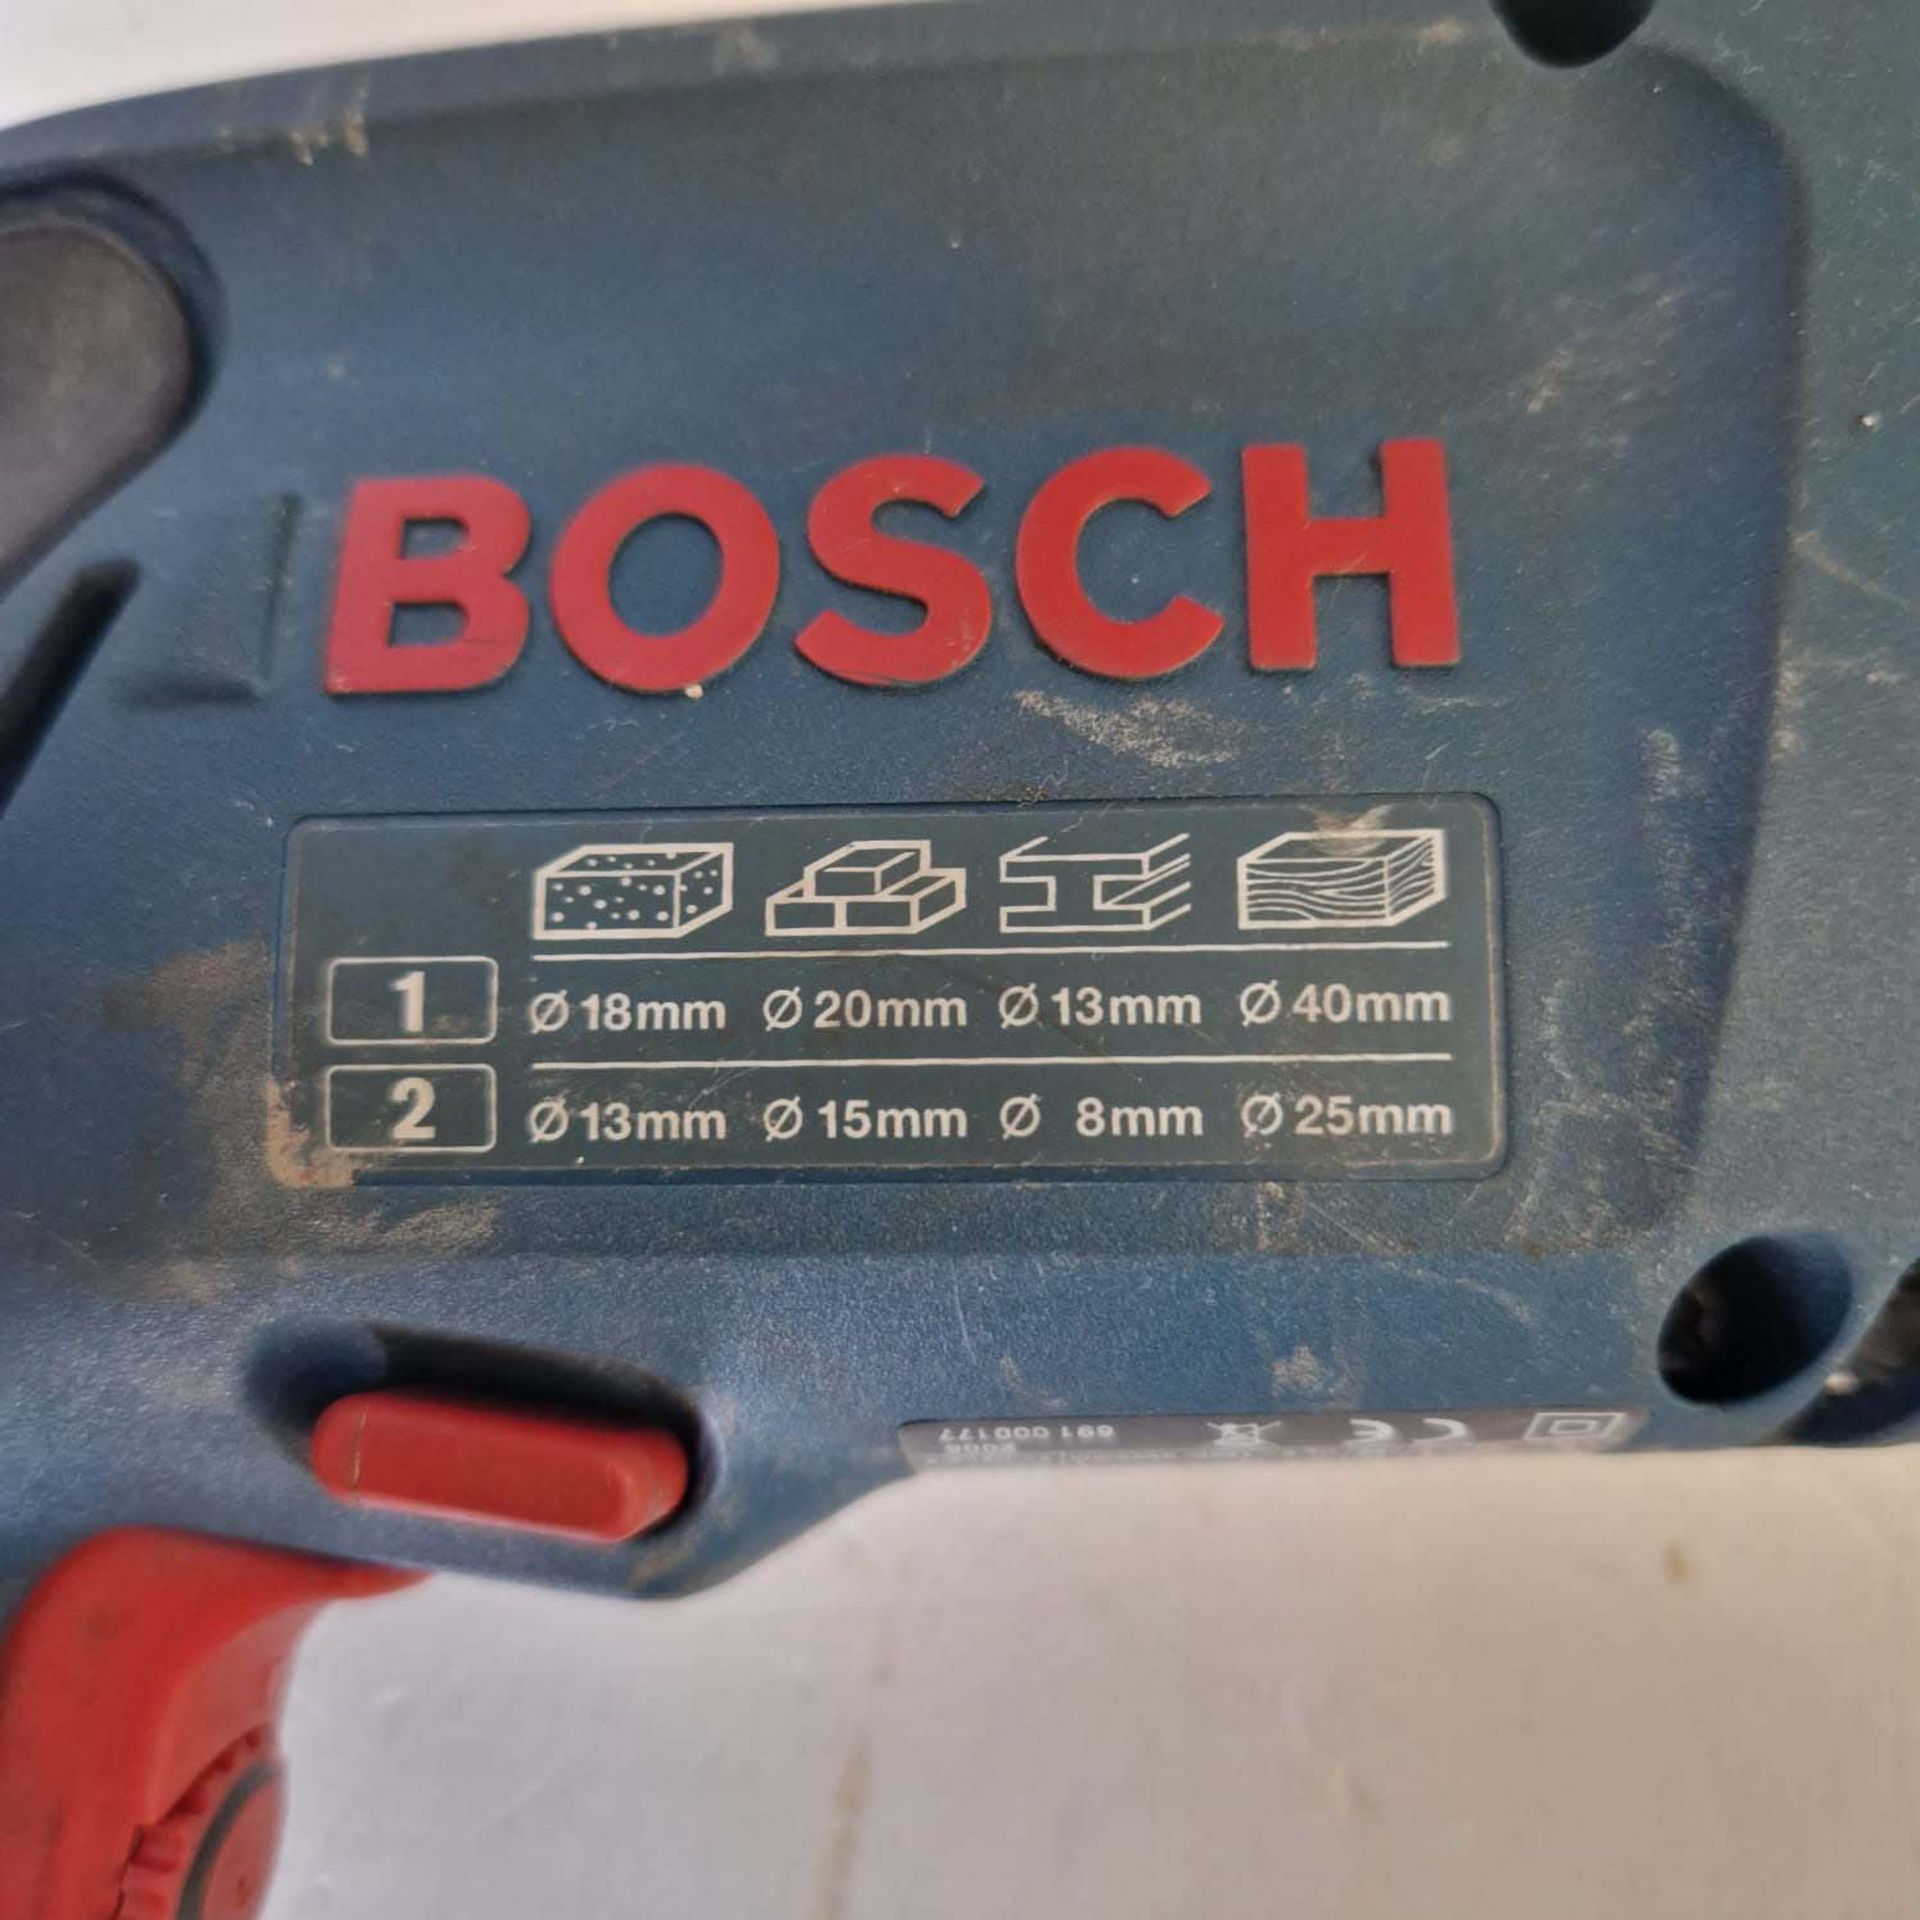 Bosch Professional Hammer Drill 110V Model 6SB 18-2RE. - Image 6 of 9